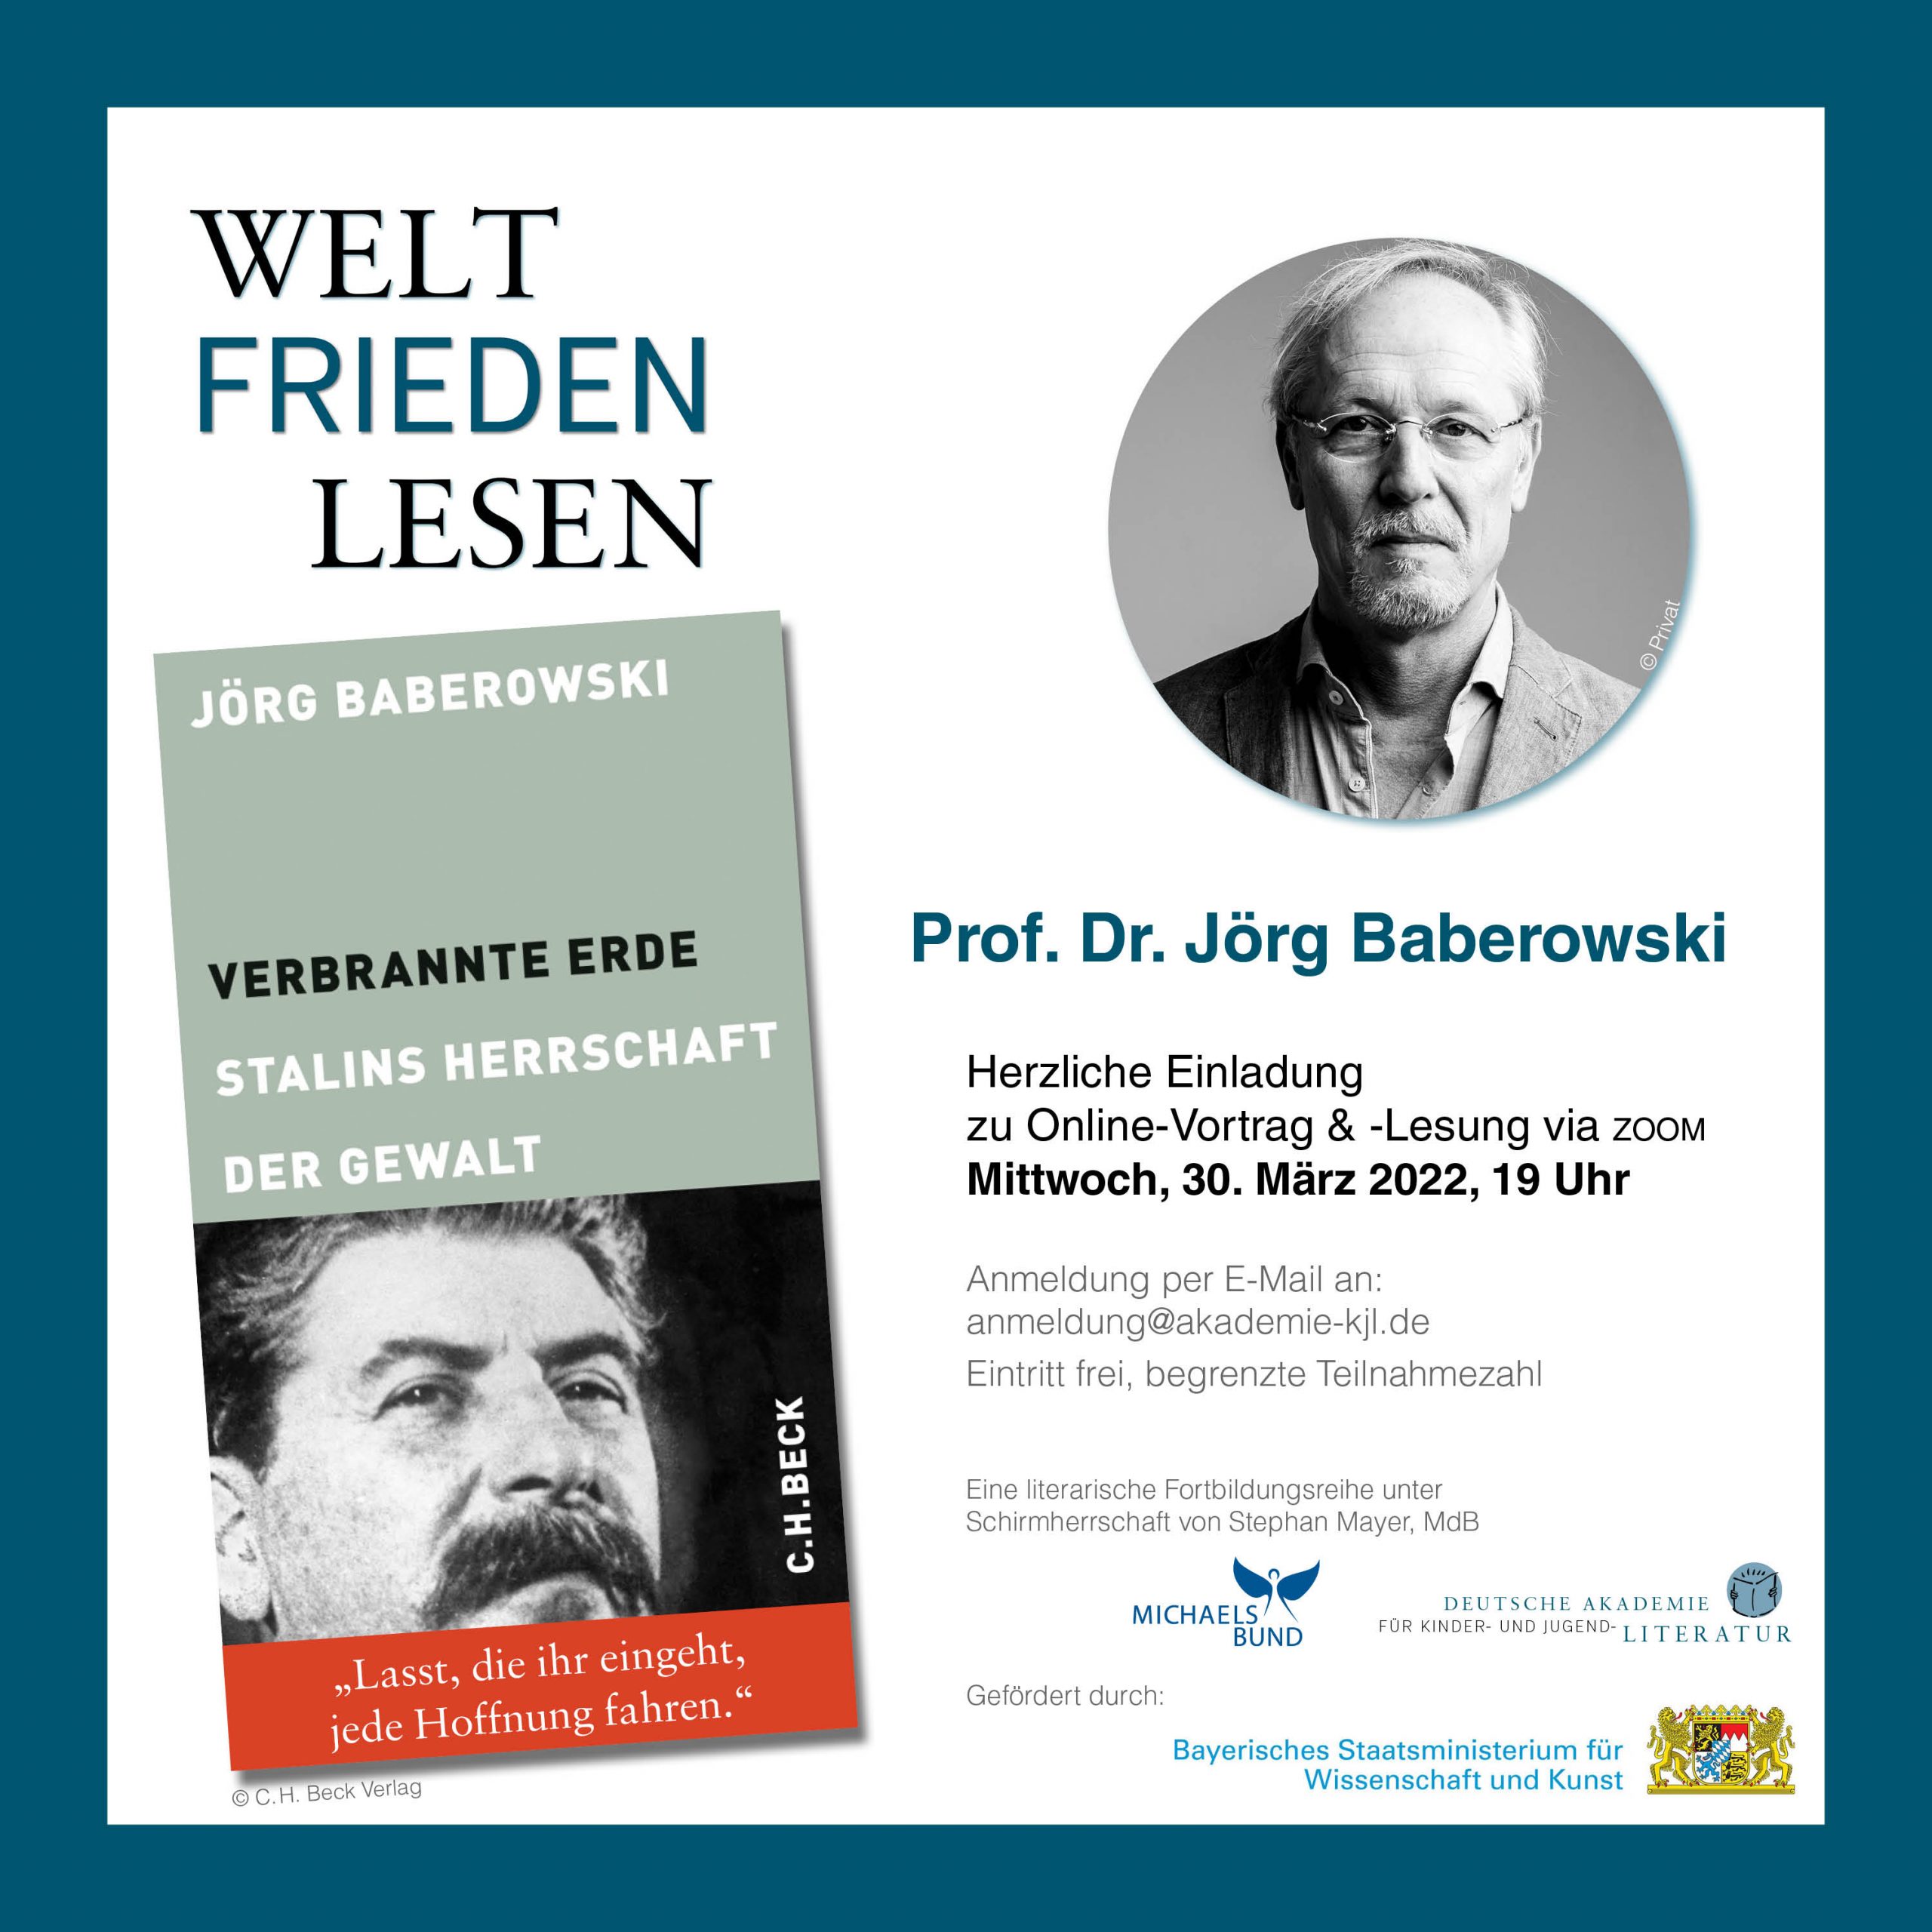 WELT|FRIEDEN|LESEN 30.03. Prof. Dr. Jörg Baberowski: Verbrannte Erde